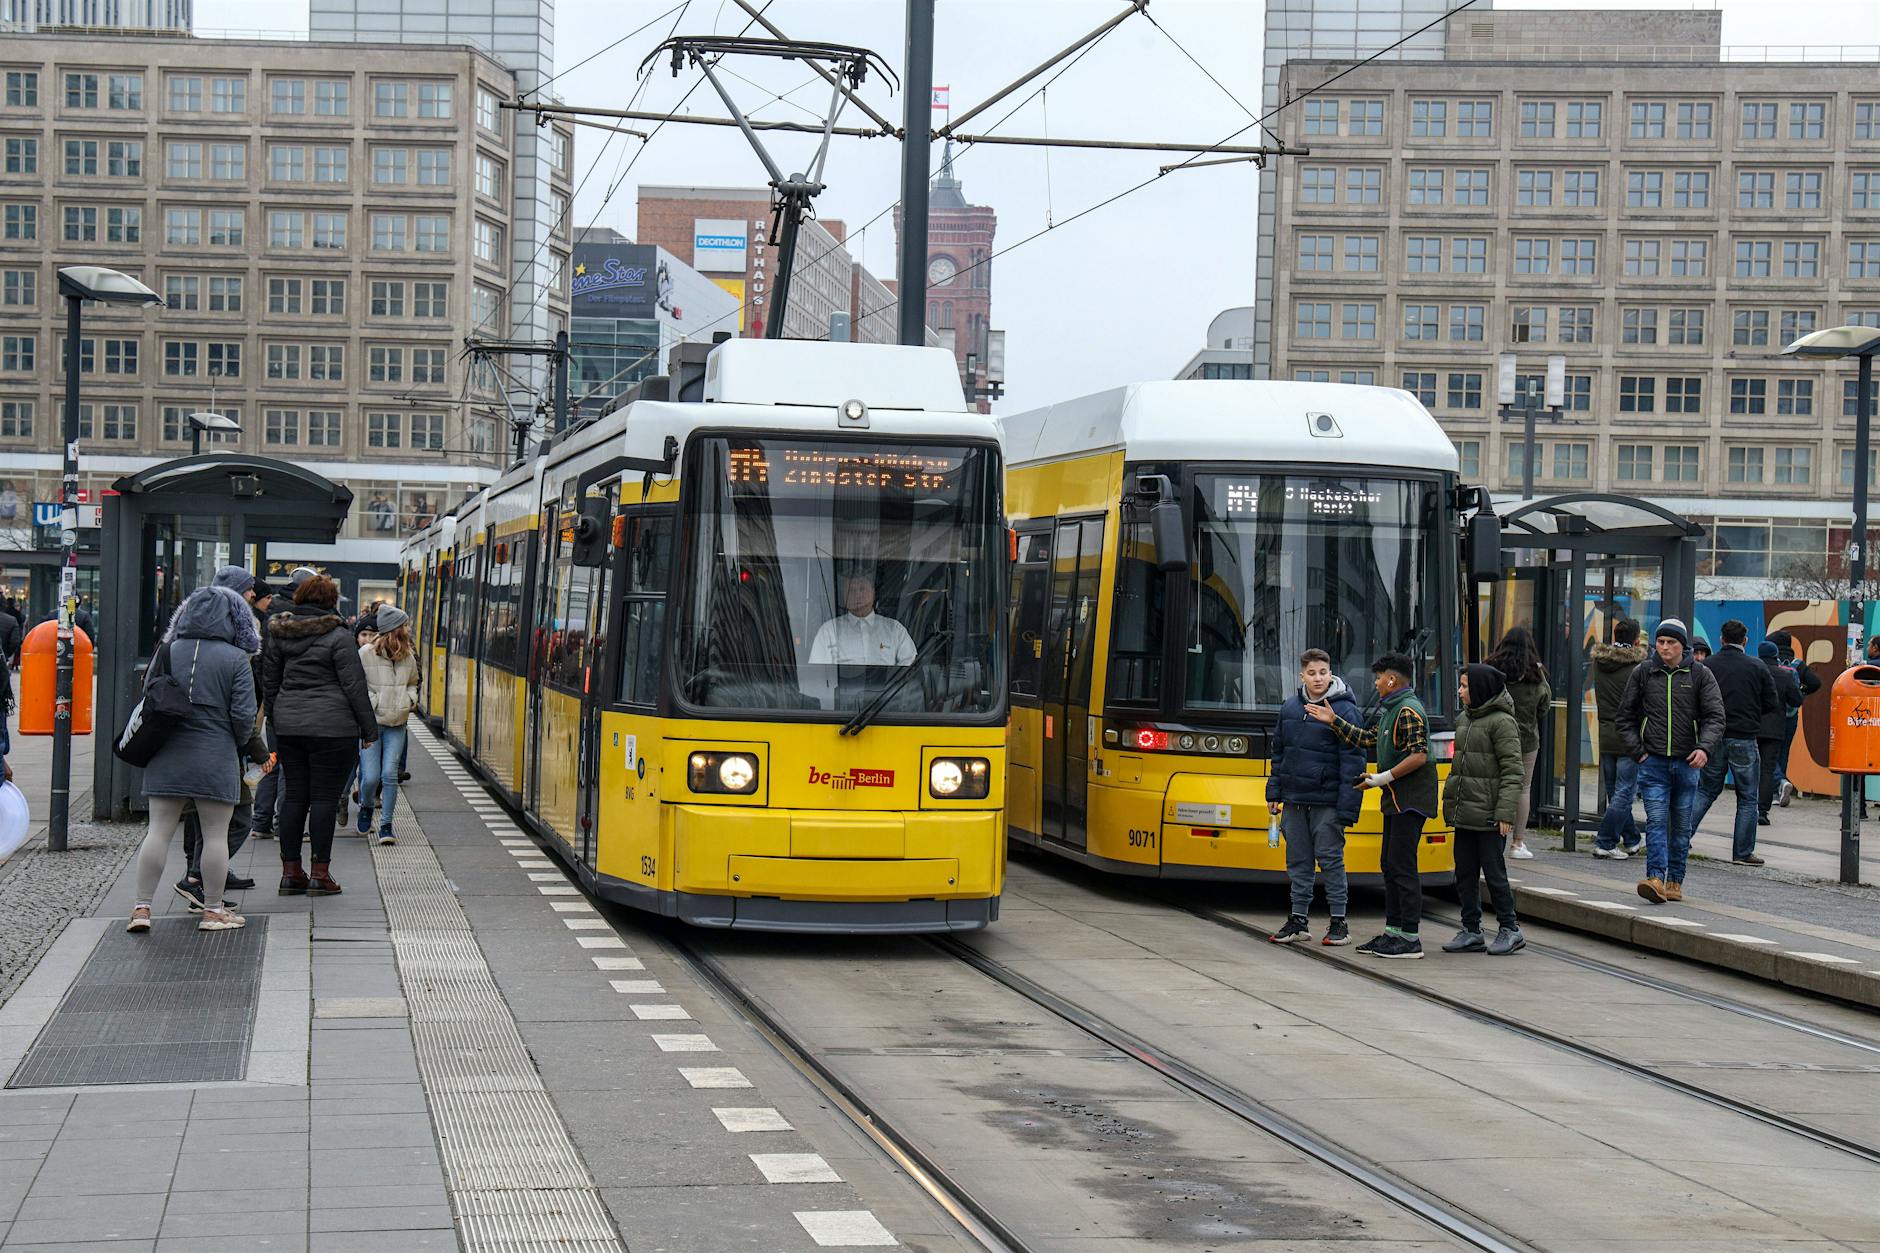 Straßenbahn zum Potsdamer Platz: So weit ist das umstrittene Tramprojekt schon gediehen